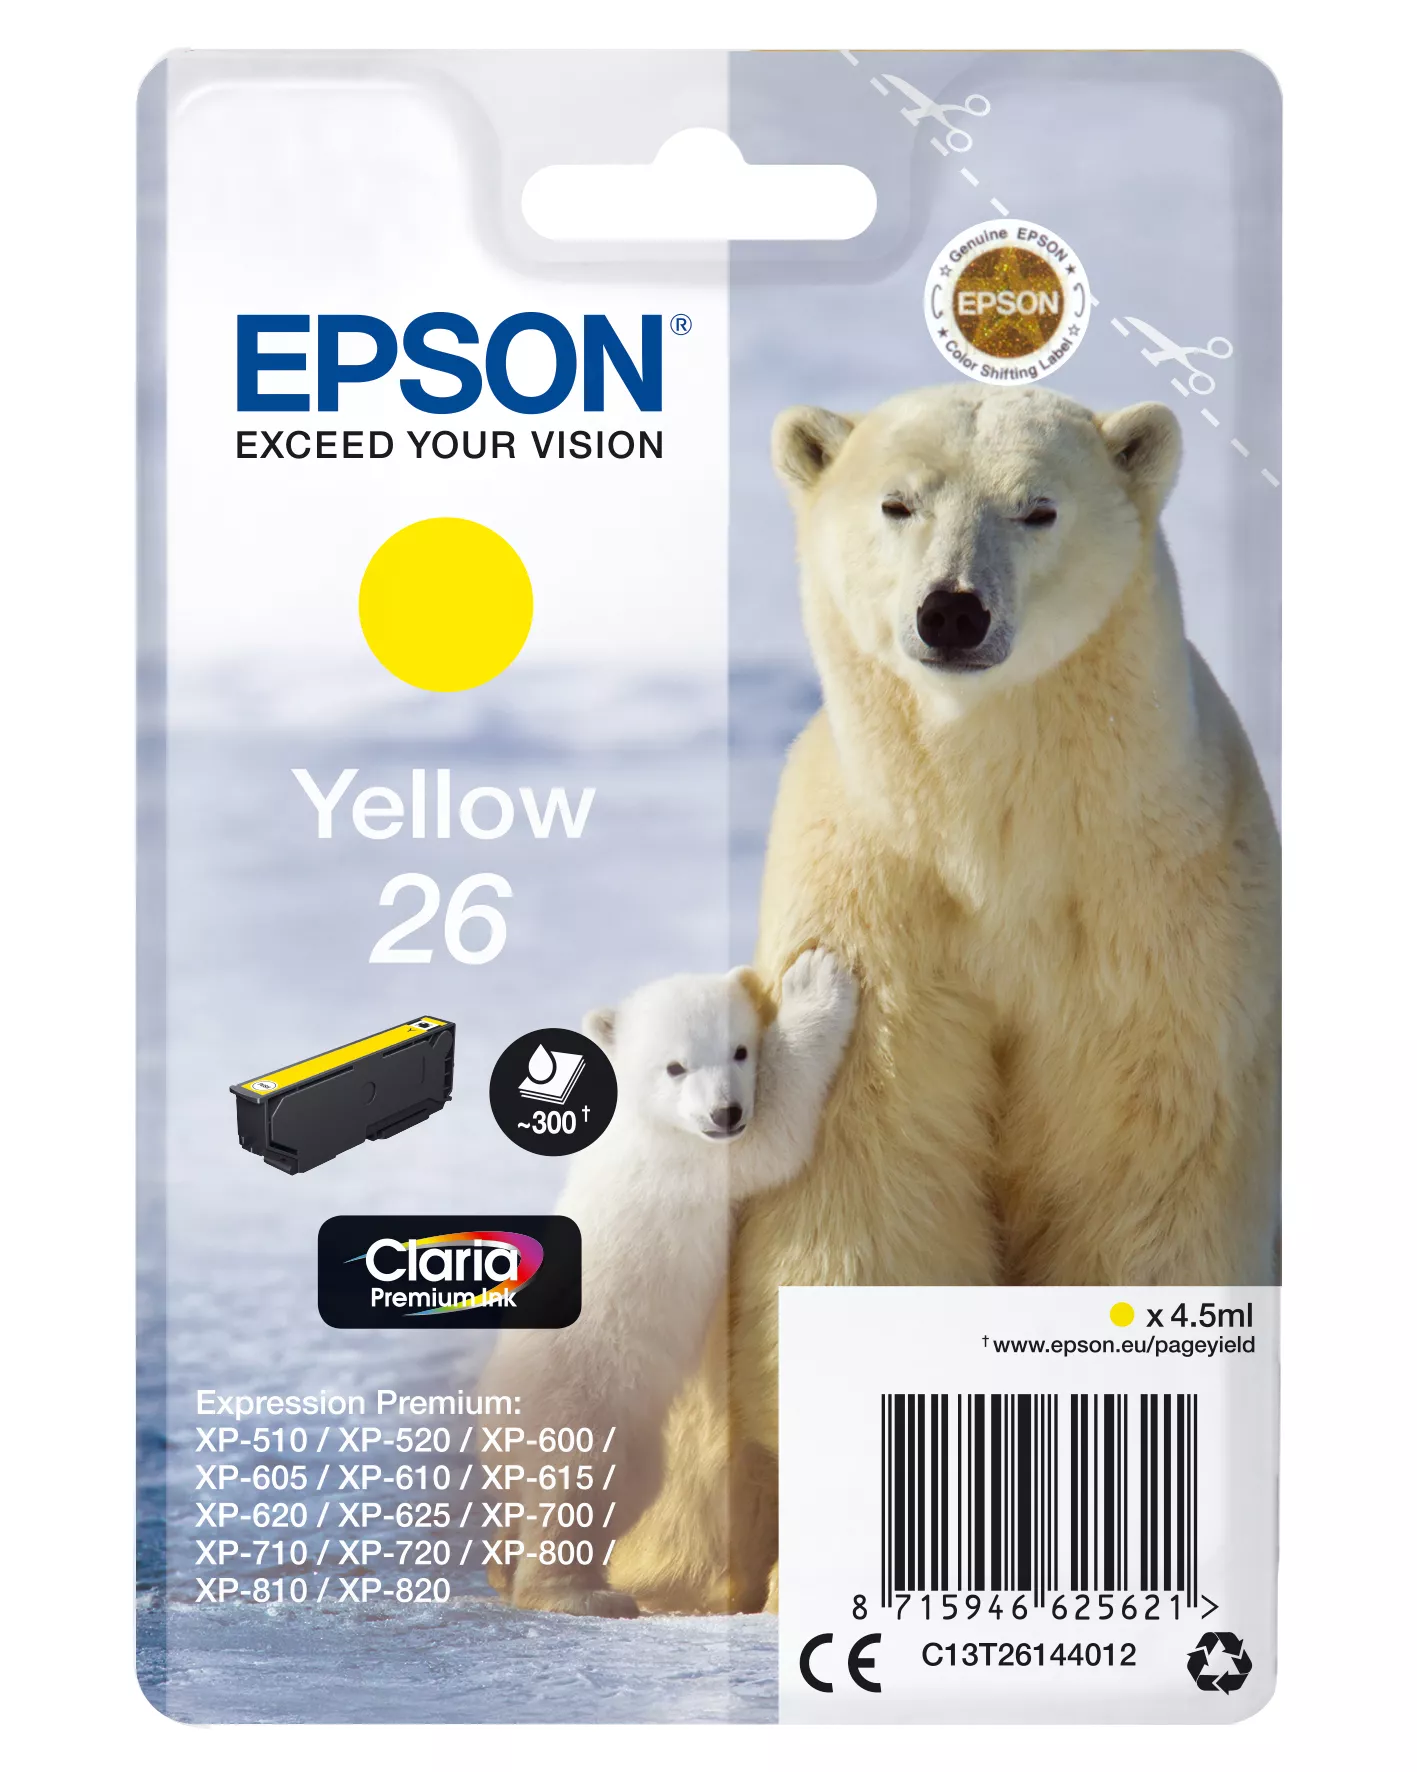 Achat EPSON 26 cartouche encre jaune capacité standard 4.5ml 300 au meilleur prix